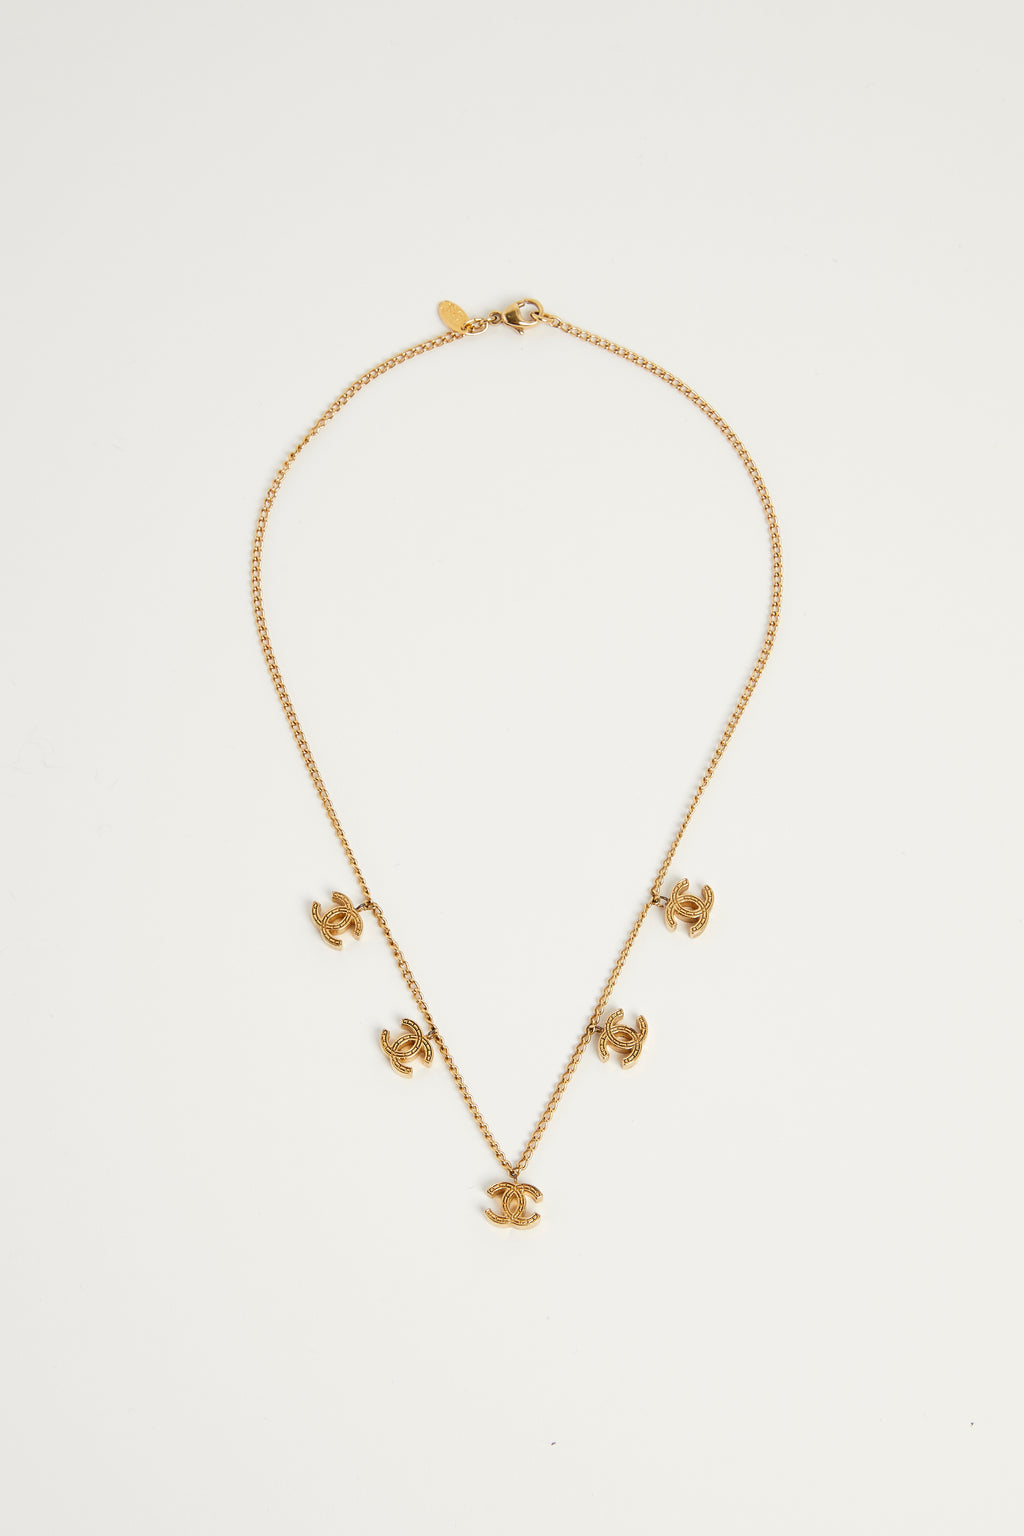 Vintage Chanel Gold Mini CC Charm Necklace